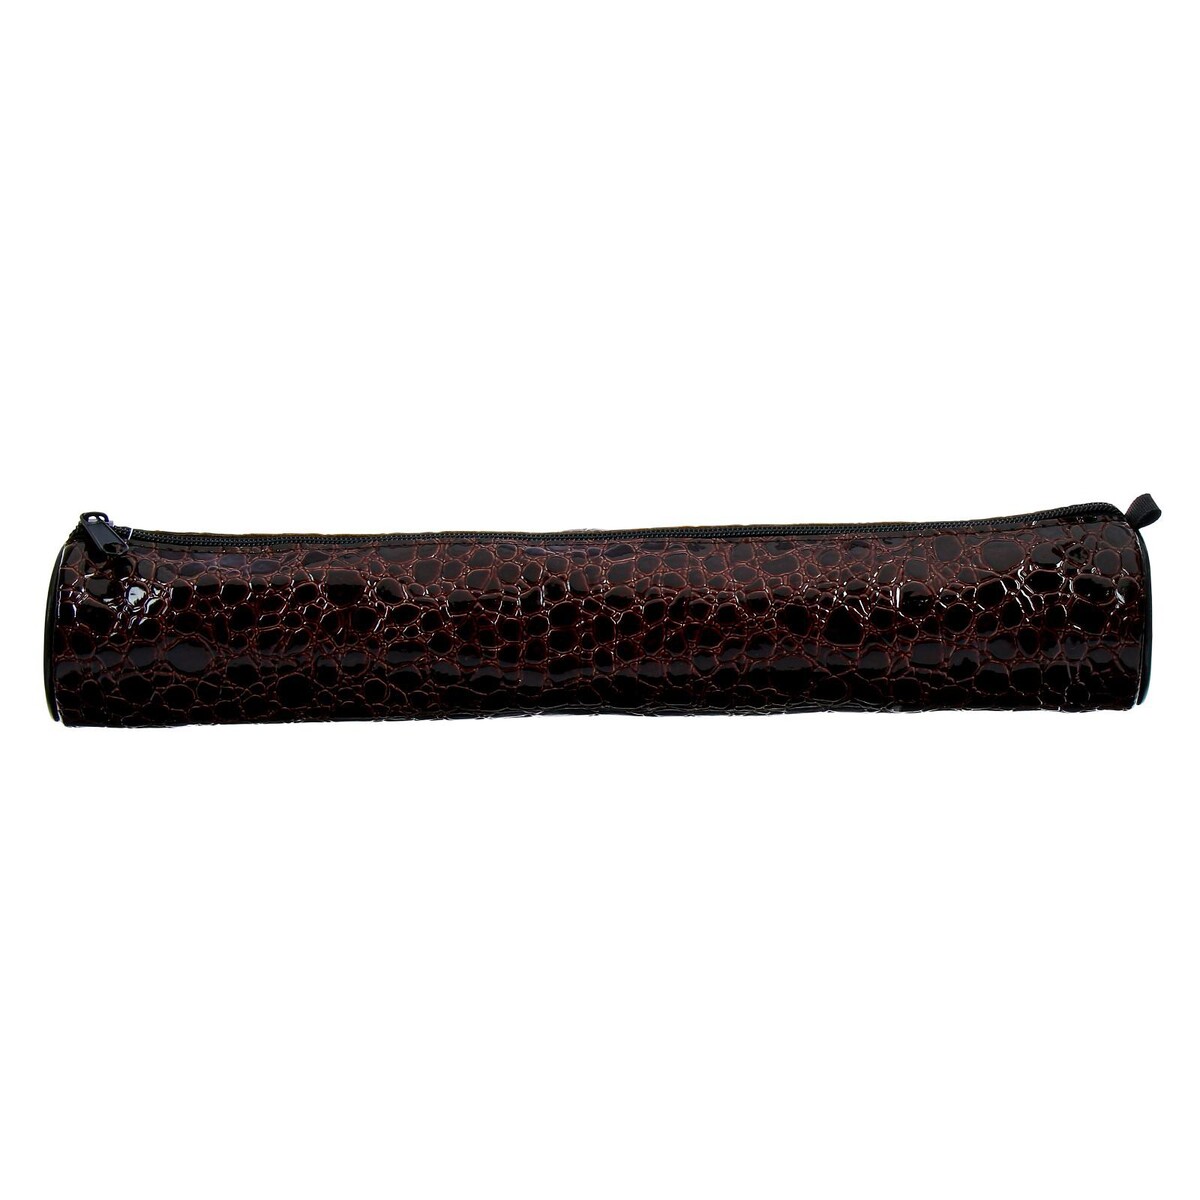 фото Пенал-тубус для кистей, мягкий, 355 х 65 мм, 7к37, кожзам, принт рептилия, глянцевый, коричневый calligrata